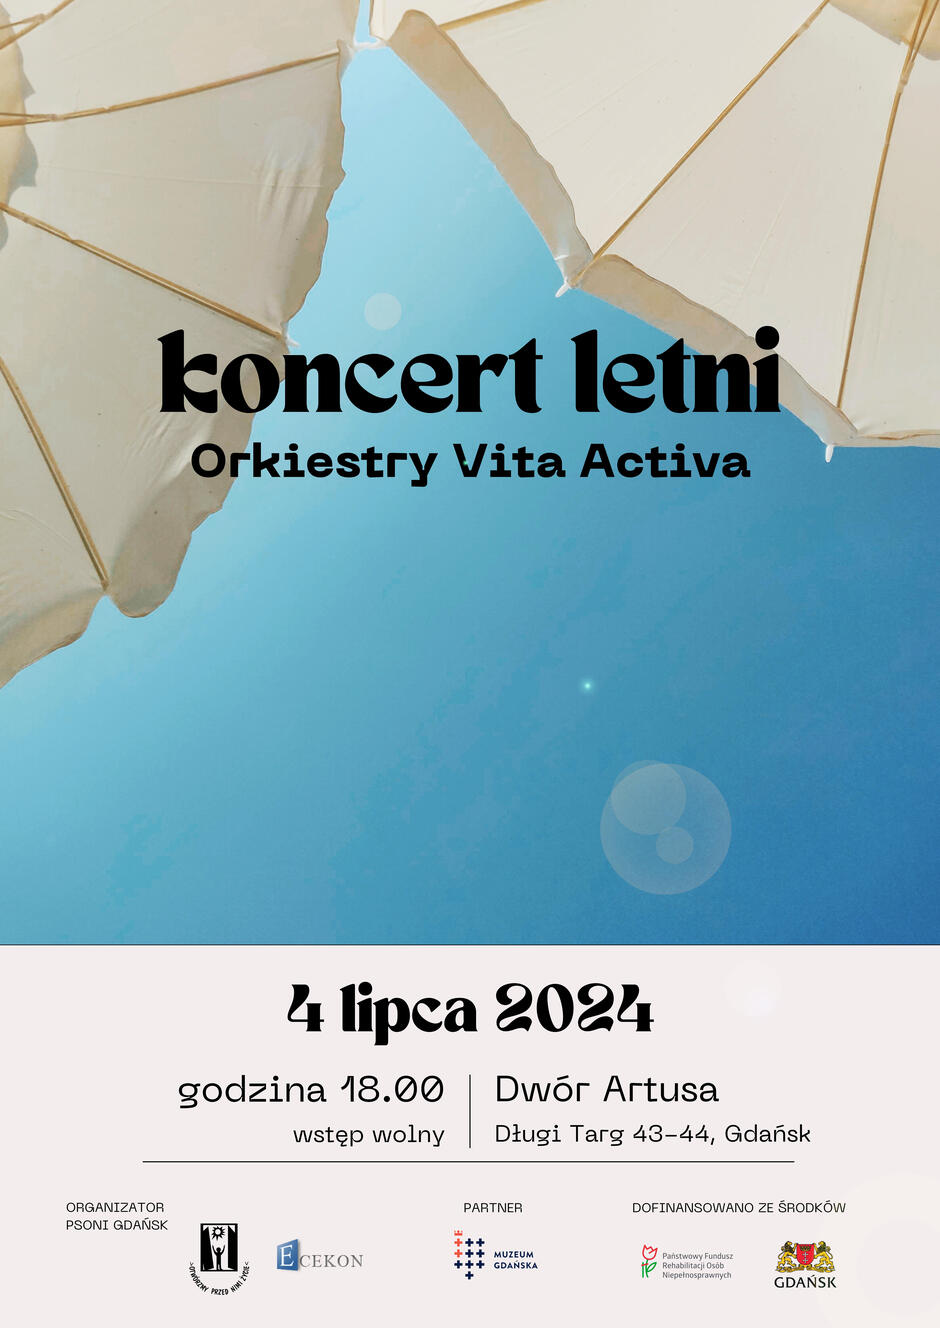 Na plakacie zapowiedziany jest letni koncert Orkiestry Vita Activa, który odbędzie się 4 lipca 2024 roku o godzinie 18:00 w Dworze Artusa w Gdańsku. Plakat przedstawia niebieskie niebo z fragmentem białego parasola, a na dole znajdują się logotypy organizatora, partnerów oraz informacja o dofinansowaniu